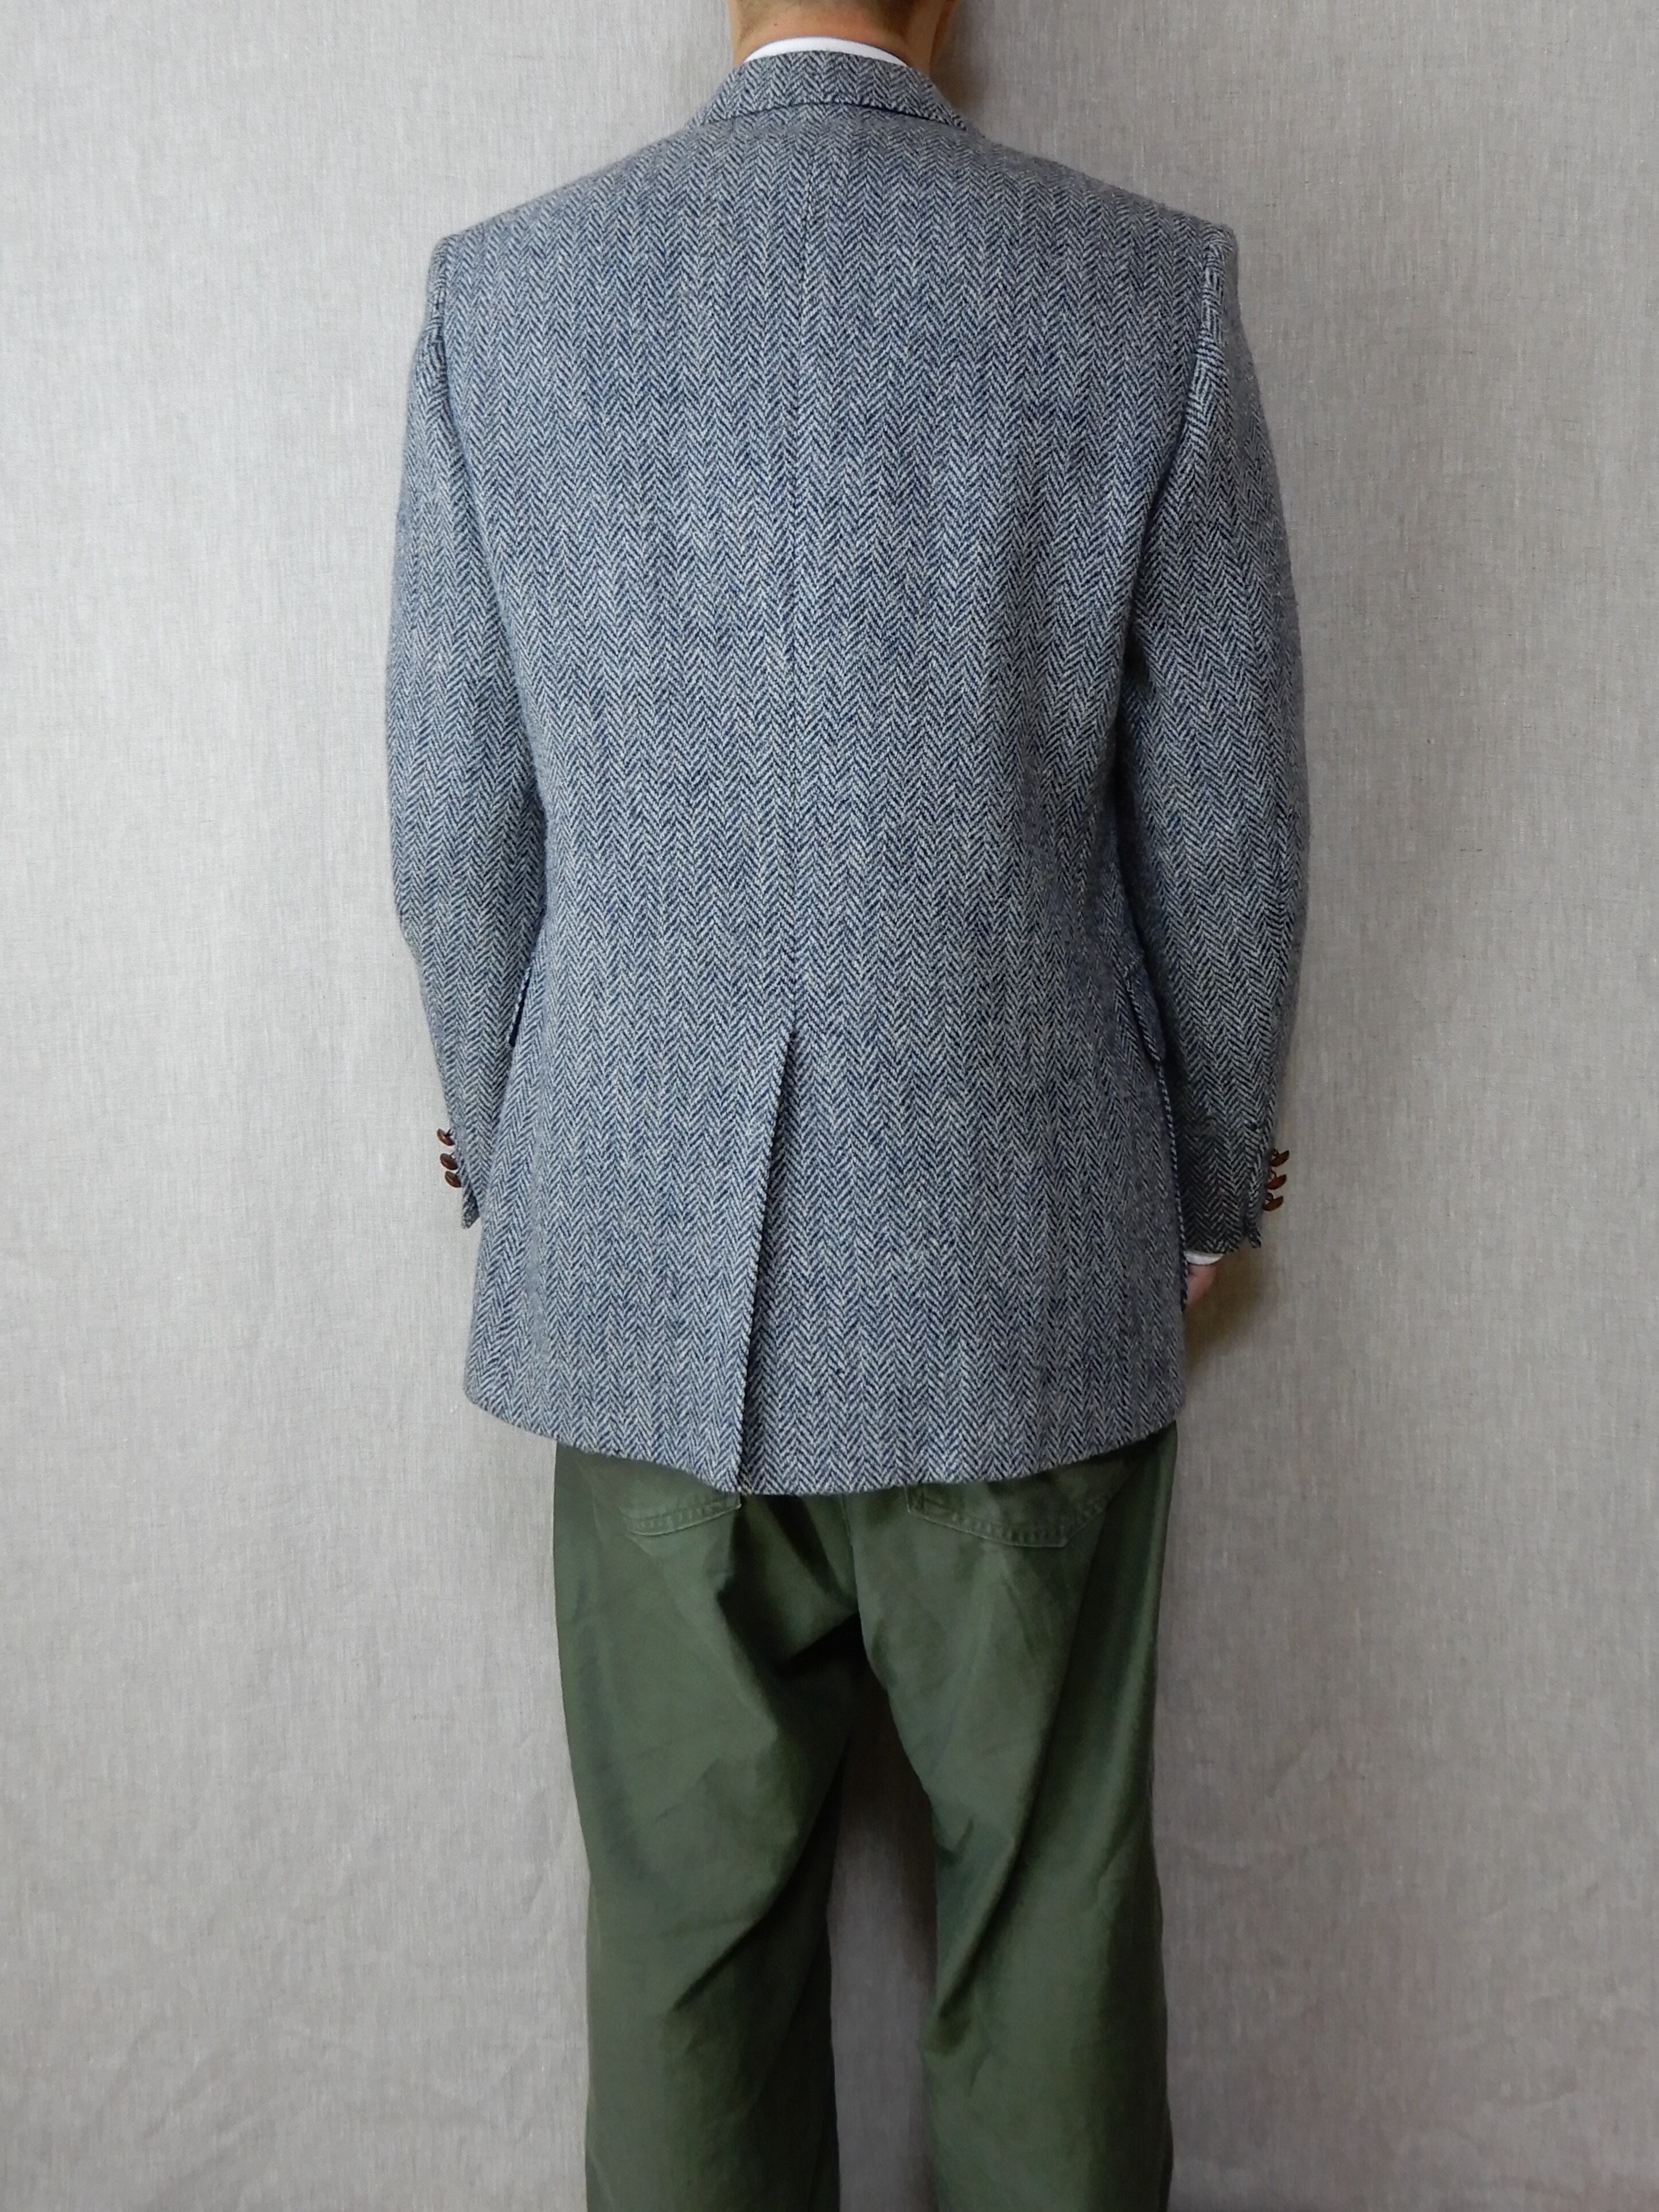 Harris Tweed Wool Jacket 1970s Barrister